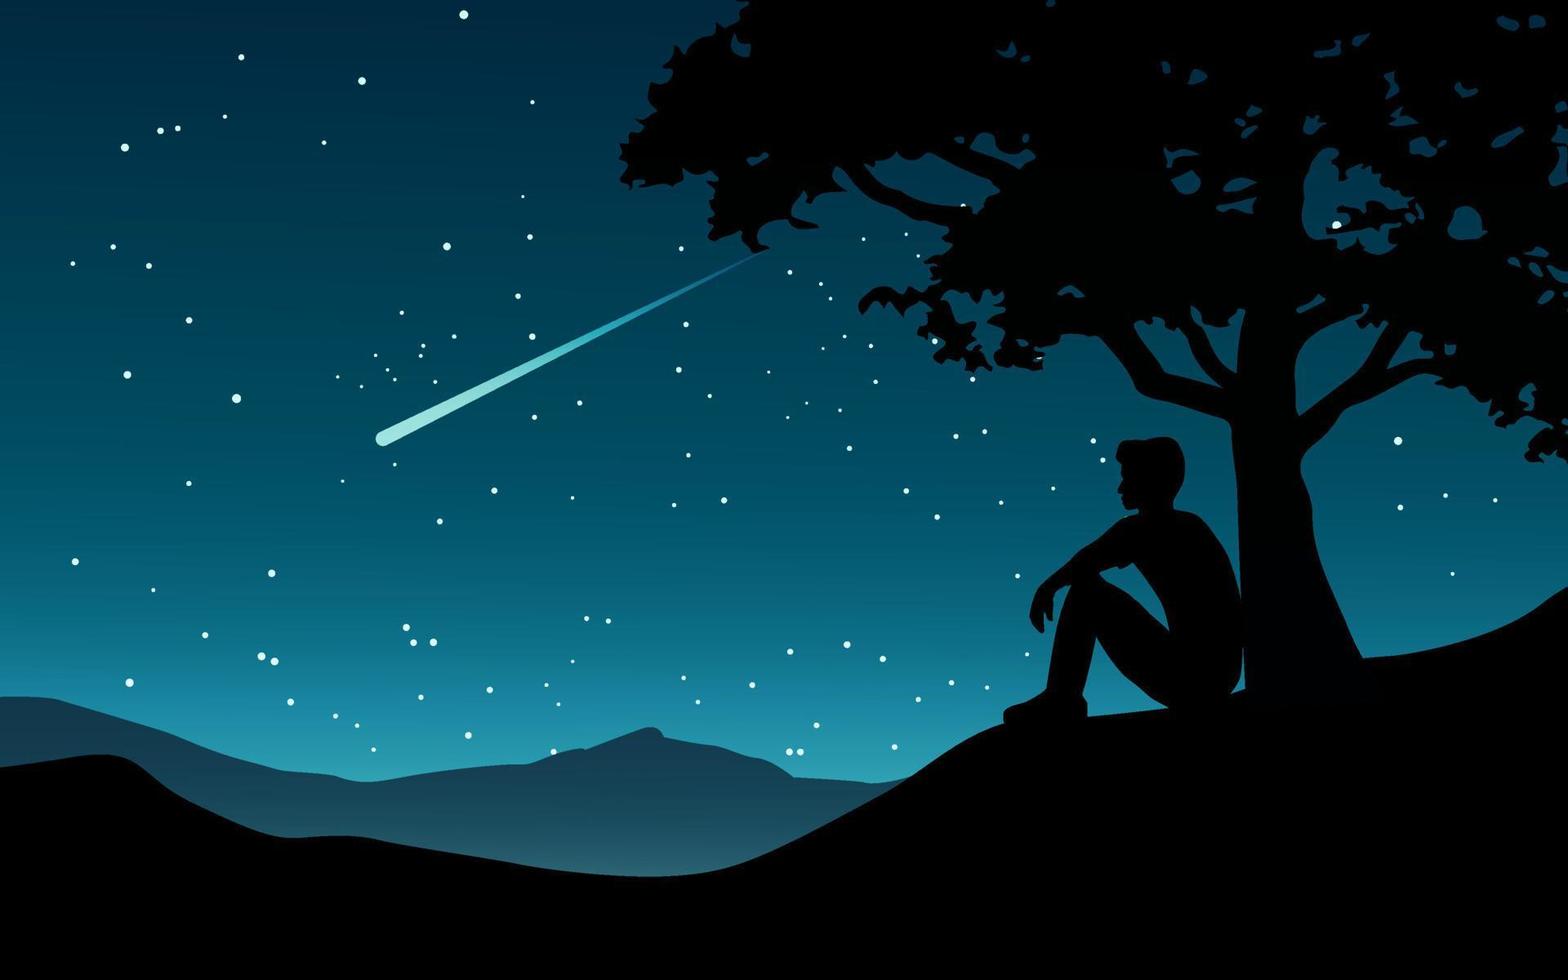 fond de nuit nature avec homme pleine lune et assis sous l'arbre vecteur